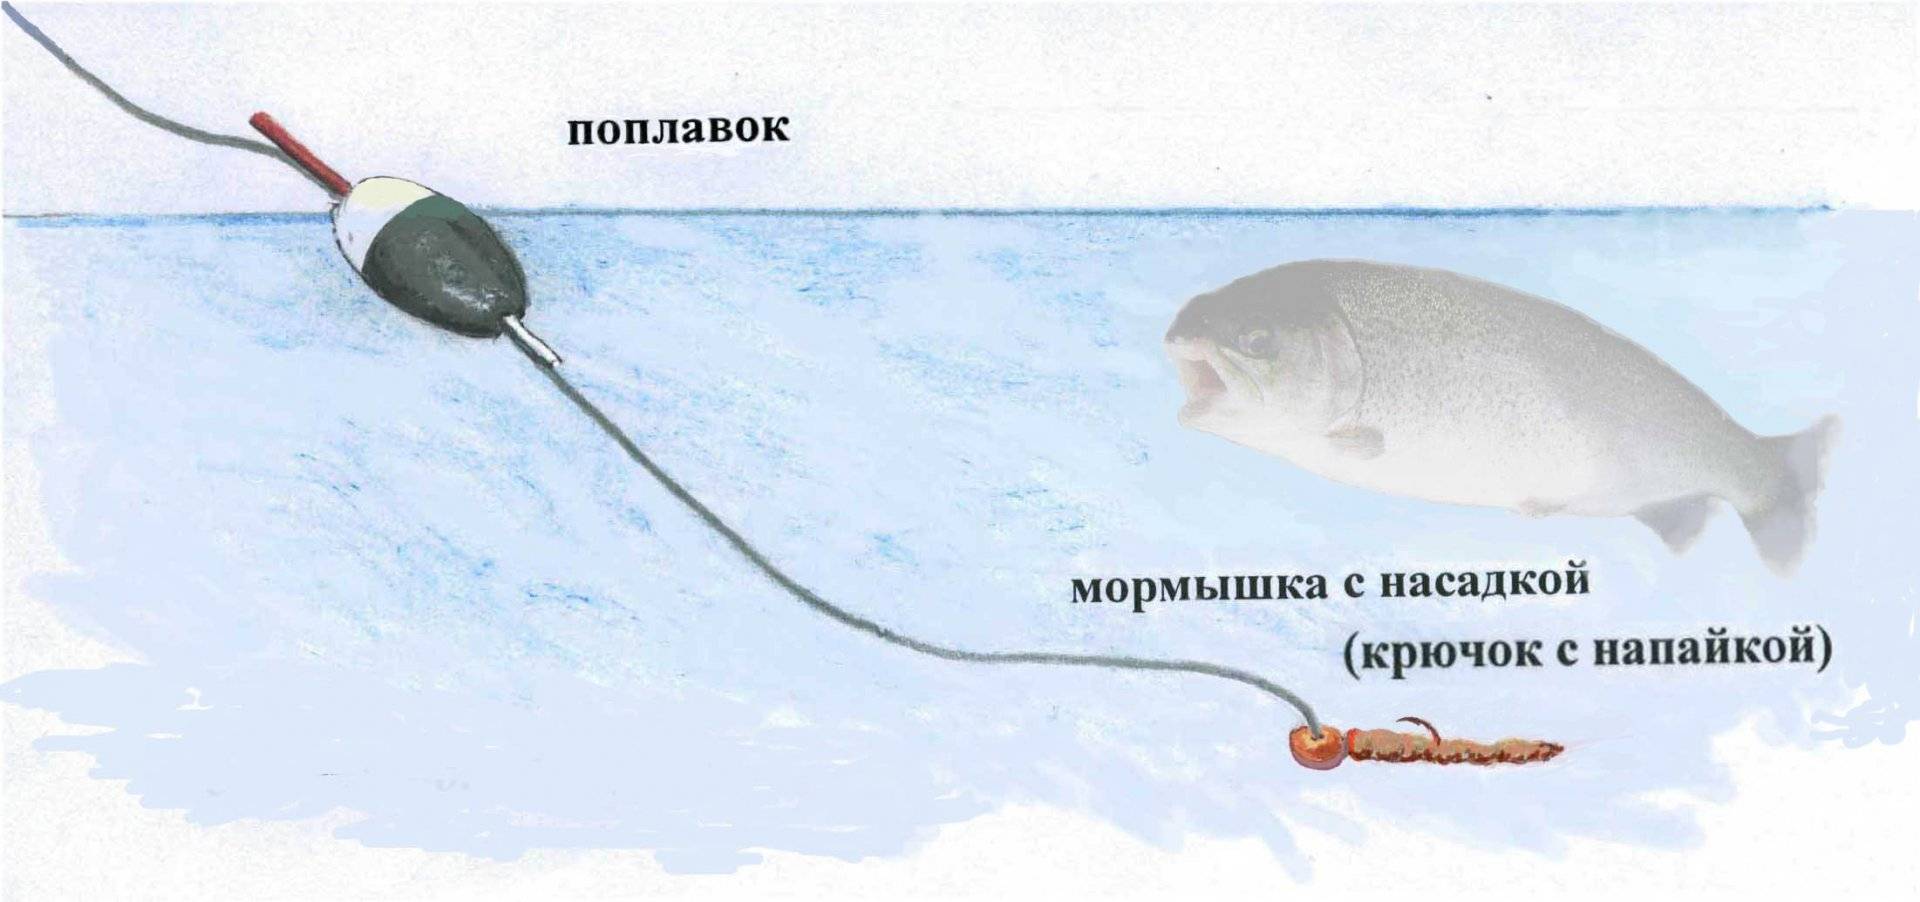 Ловля форели зимой: как правильно и на что ловить рыбу со льда, снасти и приманки